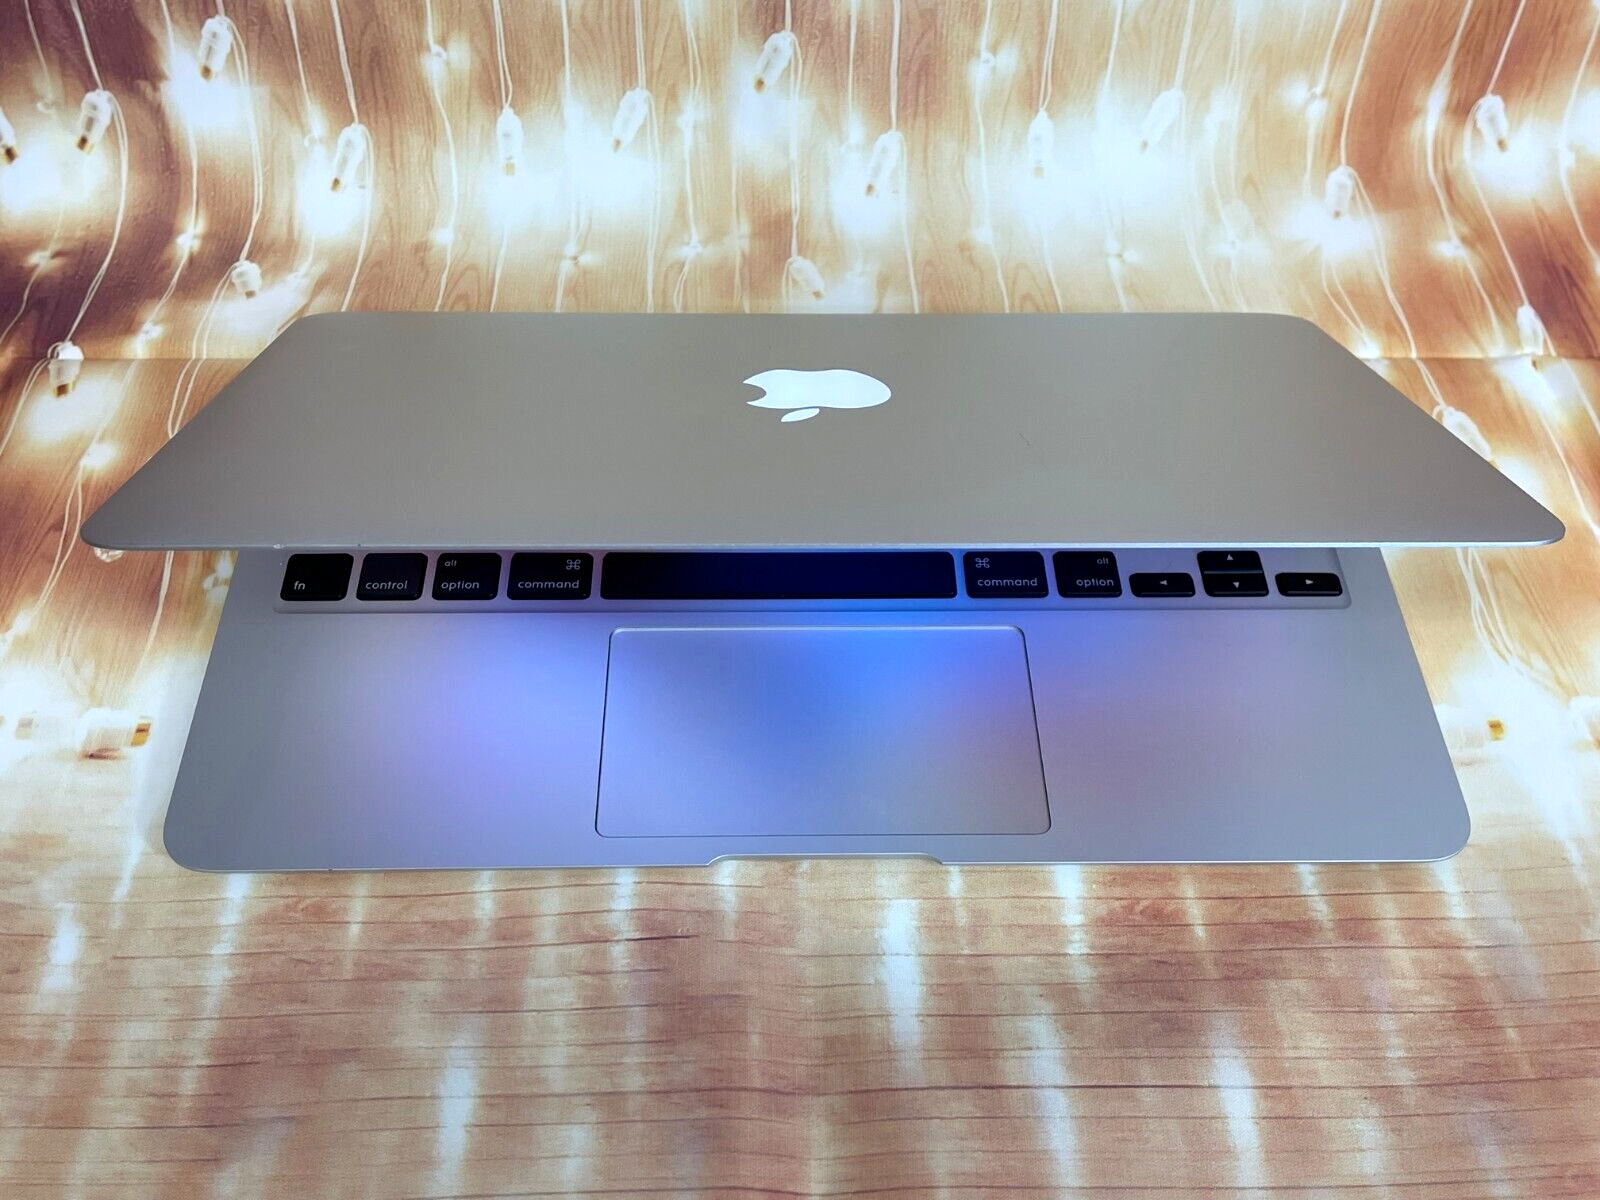 Apple Macbook Air 11\